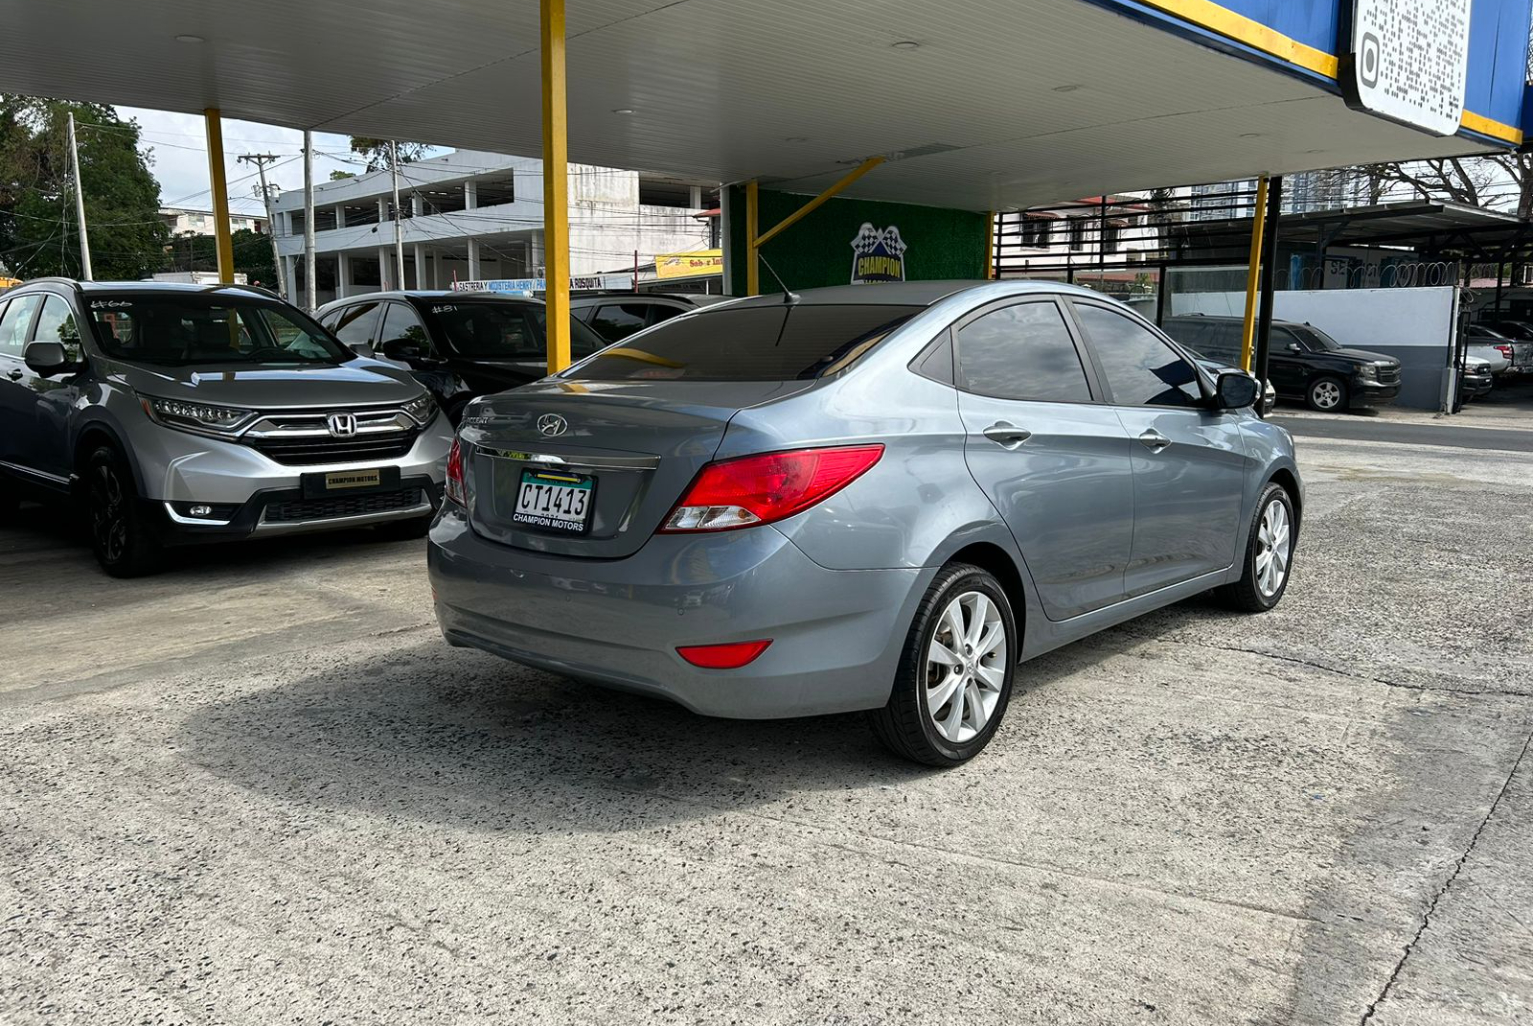 Hyundai Accent 2019 Automático color Plateado, Imagen #4